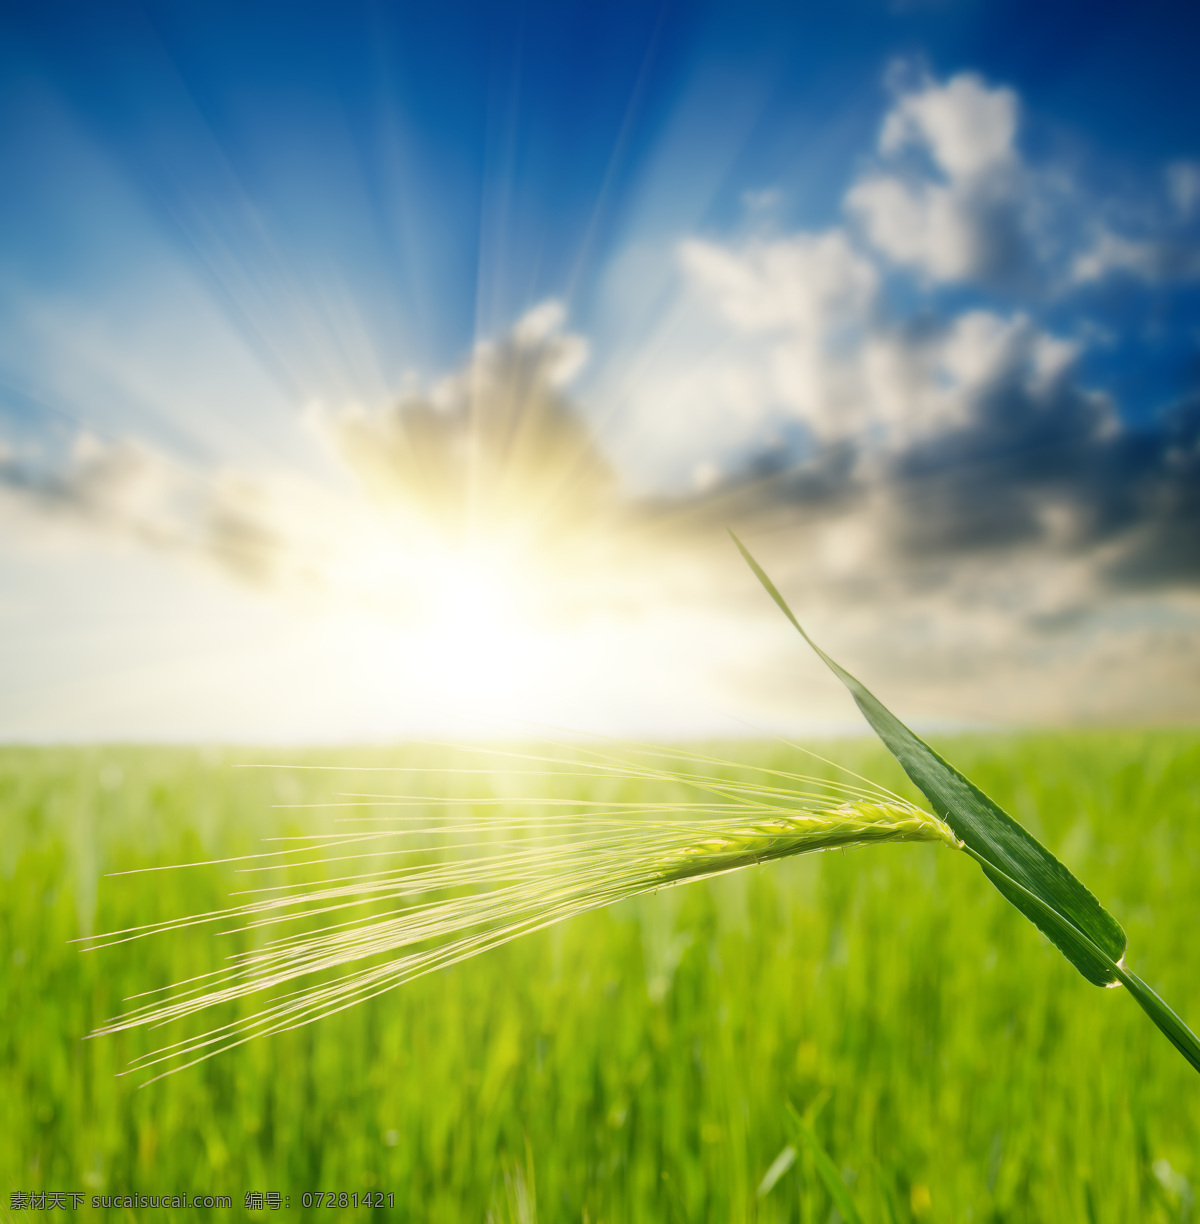 阳光 照射 绿色 麦田 小麦 麦穗 稻田 麦地 田野 蓝天 山水风景 风景图片